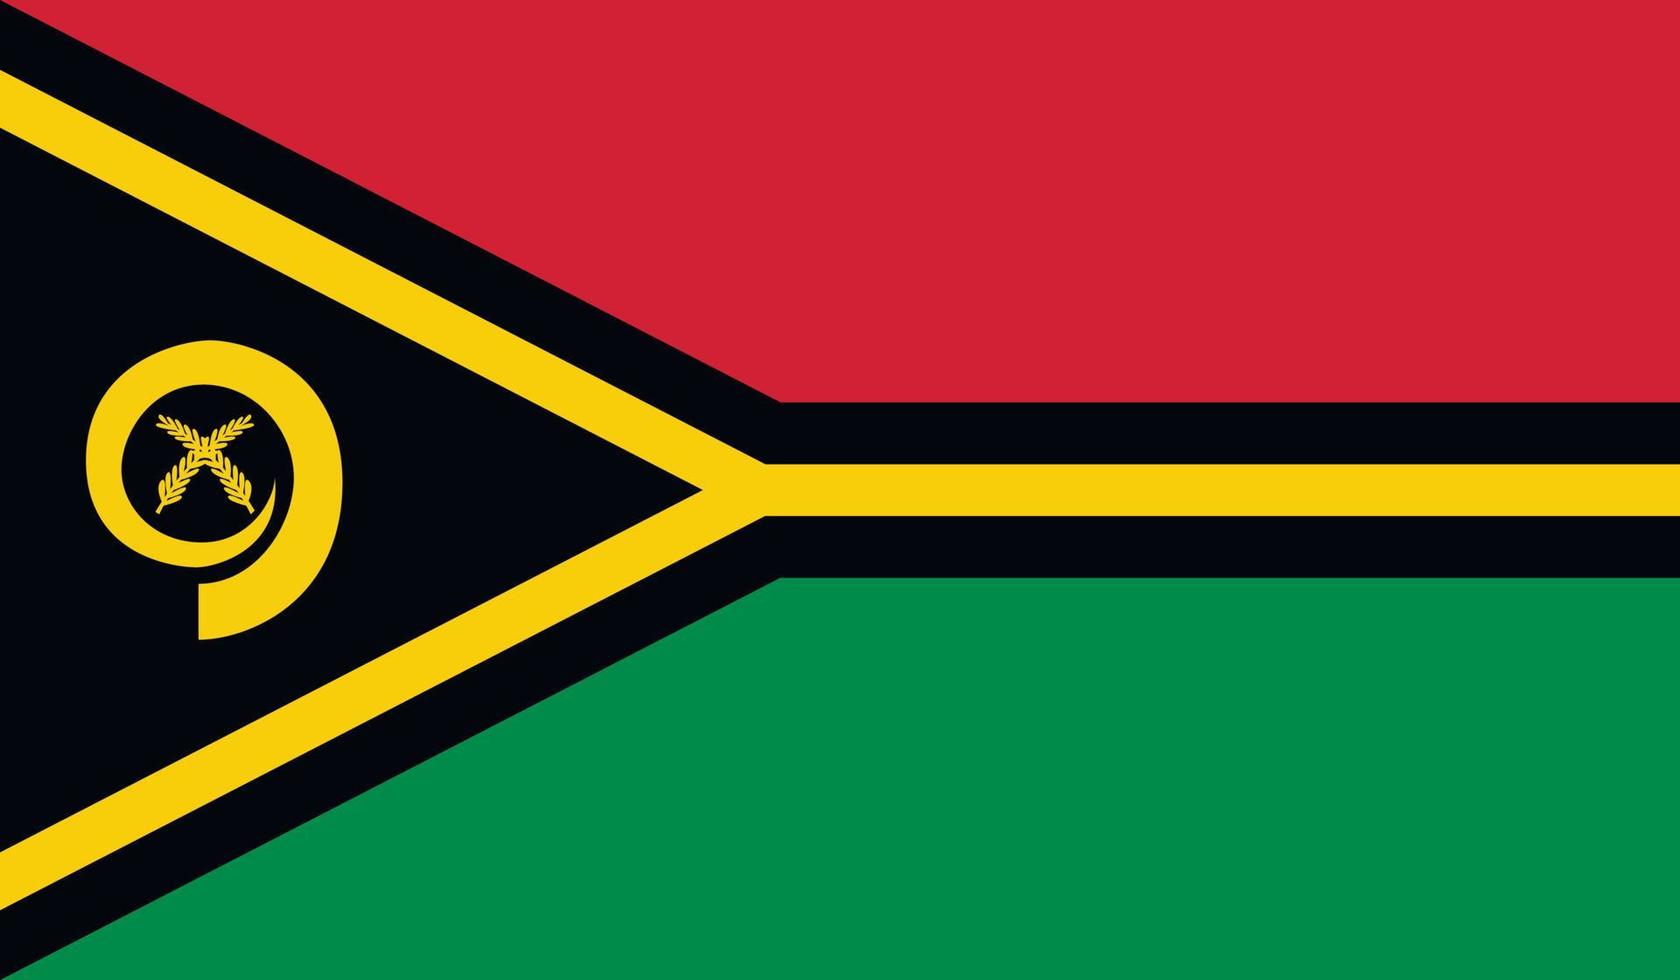 Vanuatu flag image vector